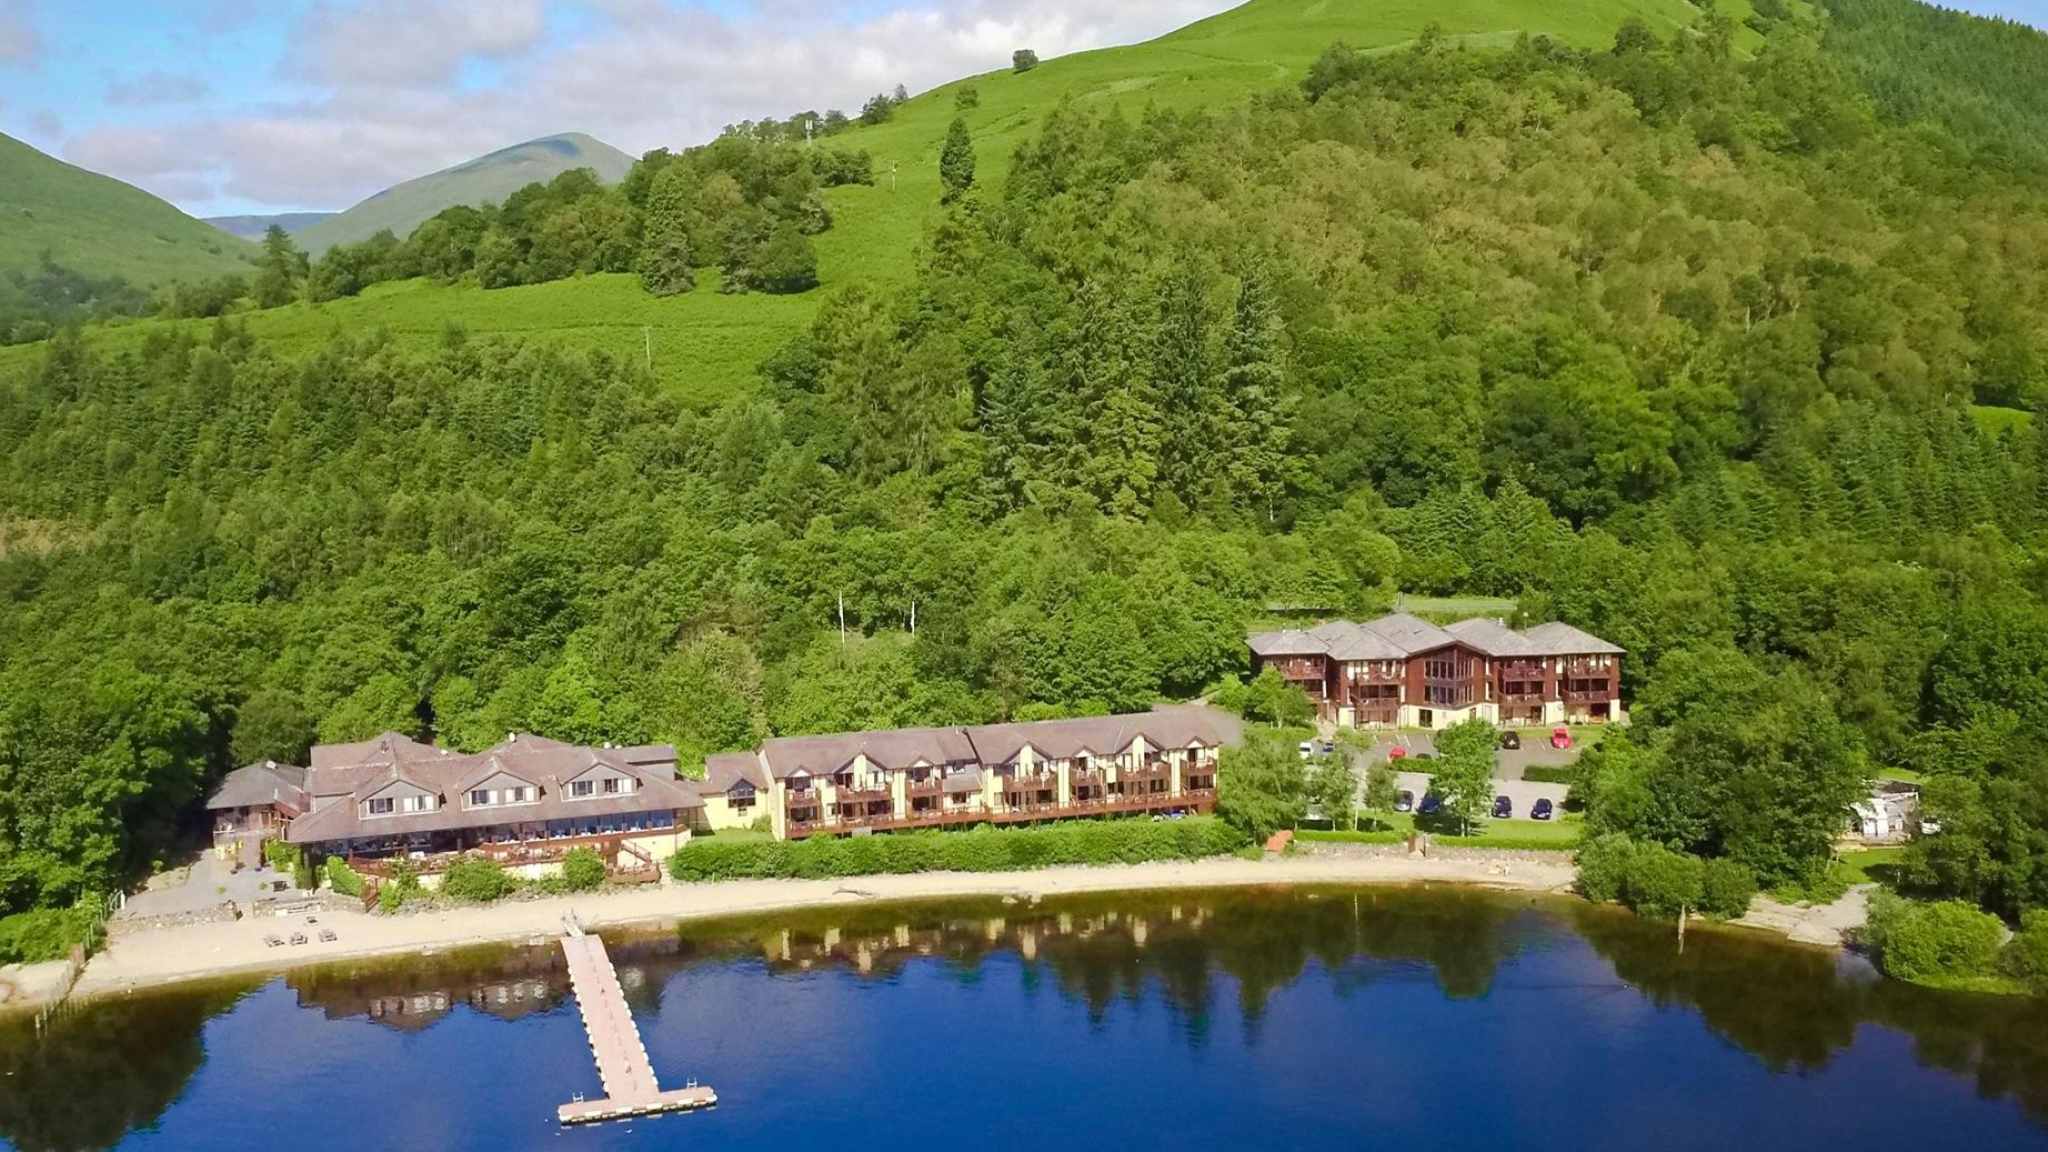 Loch Lomond wonders, Lodge hideaway, Scenic beauty, Unforgettable experiences, 2050x1160 HD Desktop